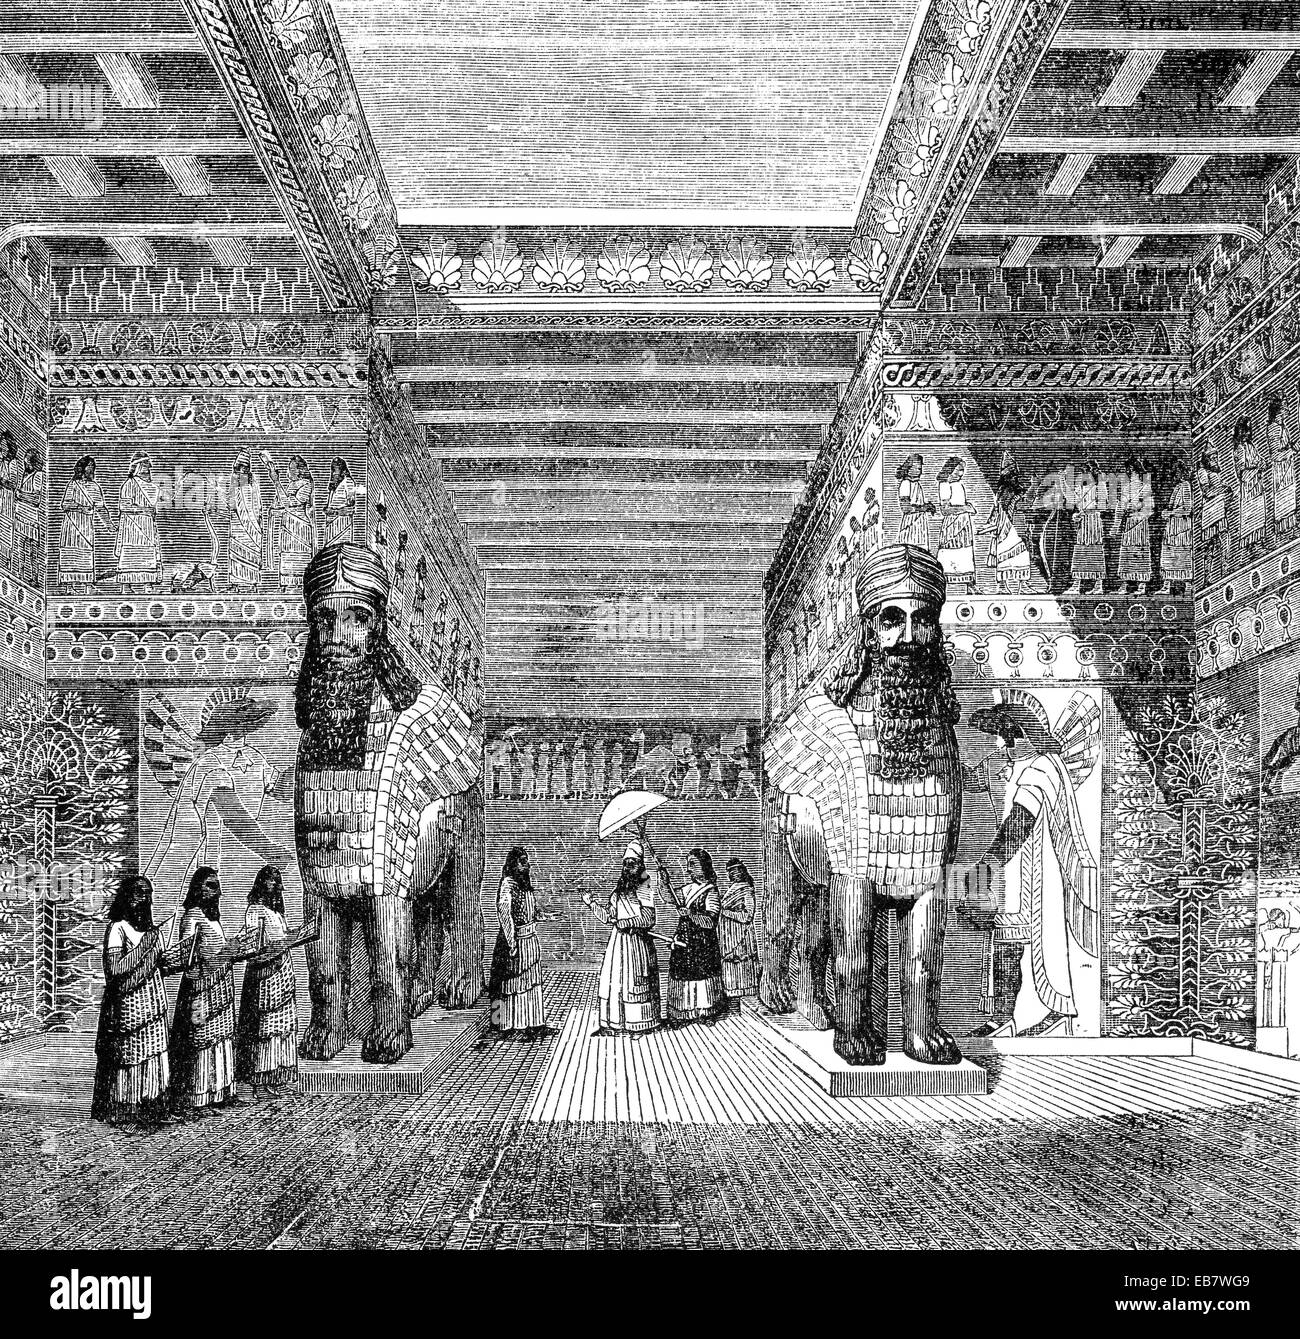 Copia arqueológico de una habitación en el Real Palacio Asirio, eines Rekonstruktion Archäologische Zimmers im königlichen Pala Foto de stock